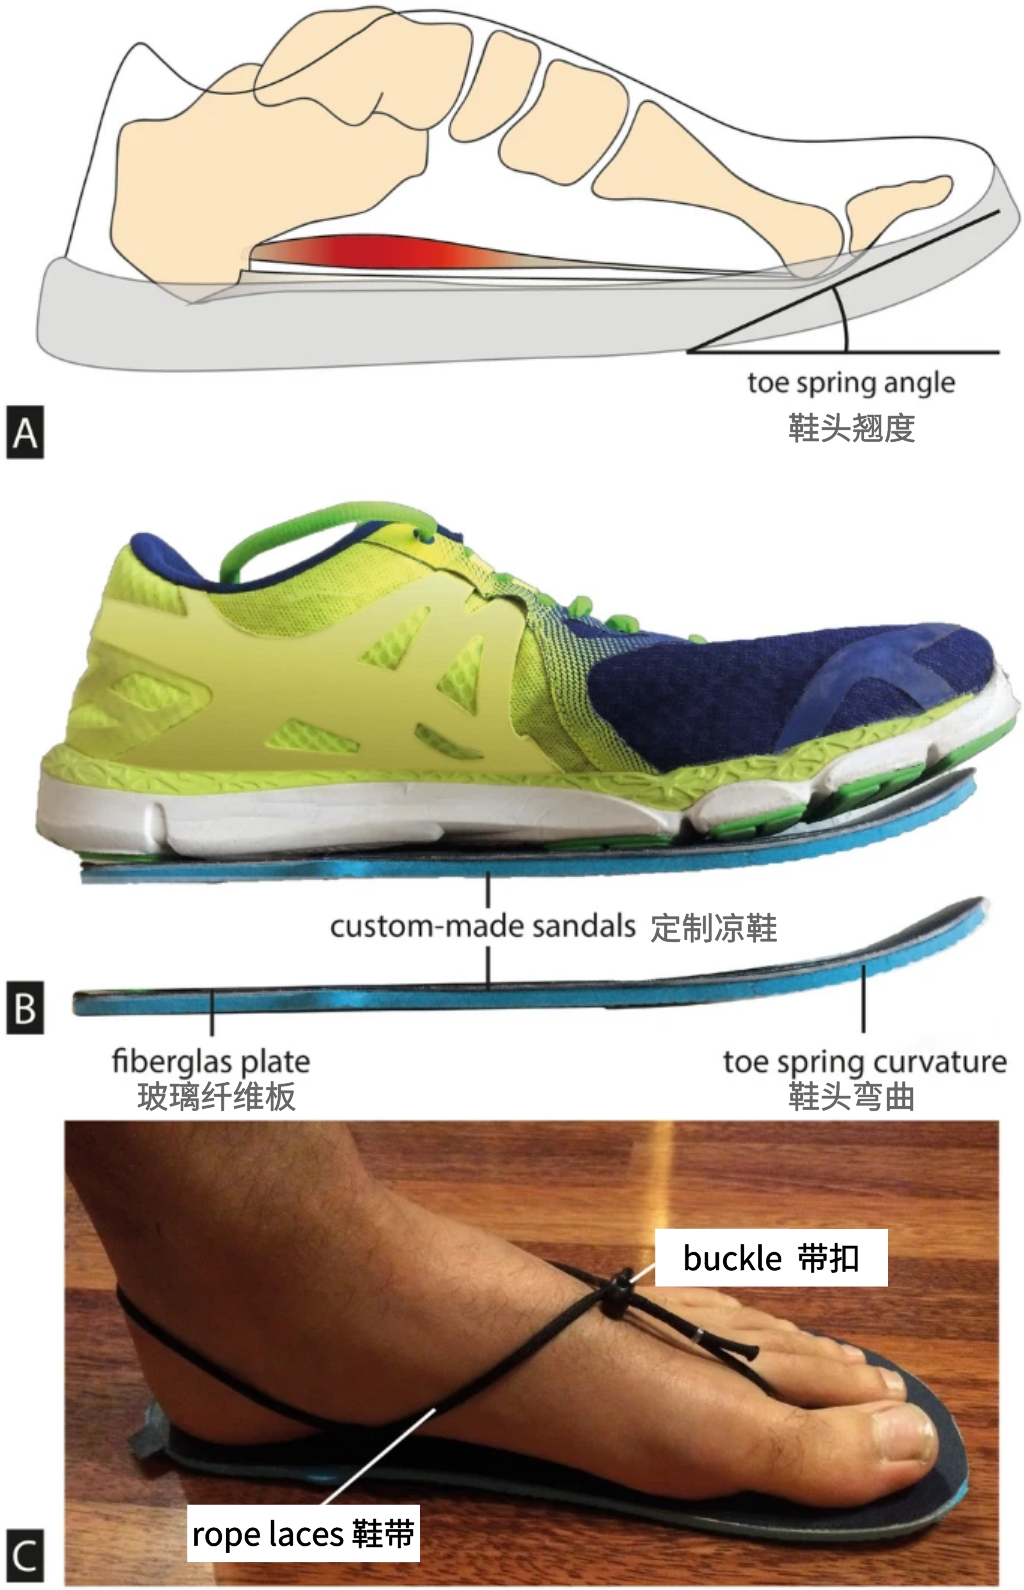 研究方向 | 鞋尖翘度对人体步行生物力学的影响